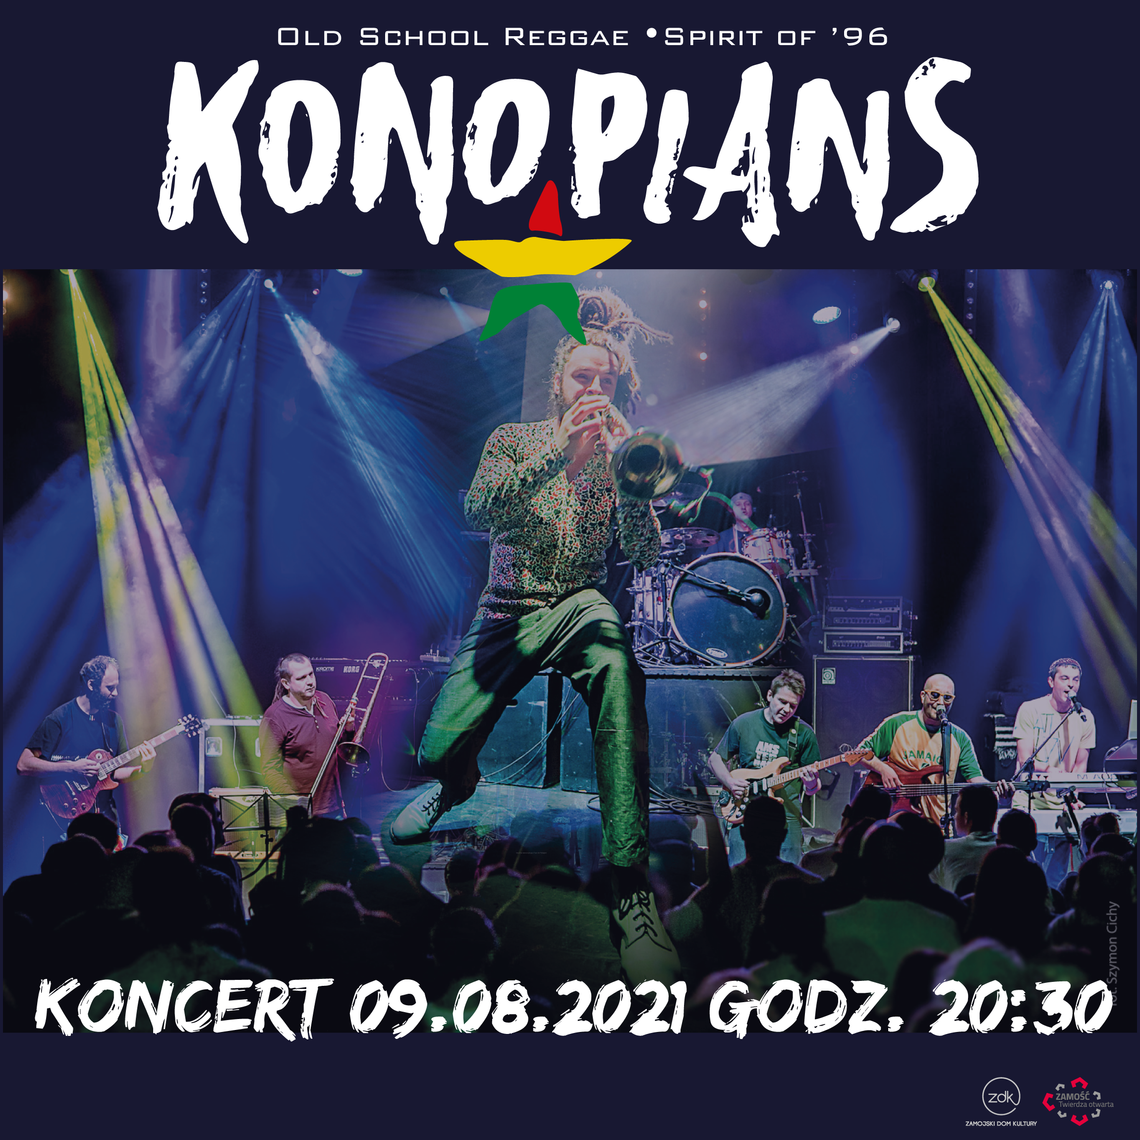 Zamość: Tour de Pologne i koncert zespołu KONOPIANS